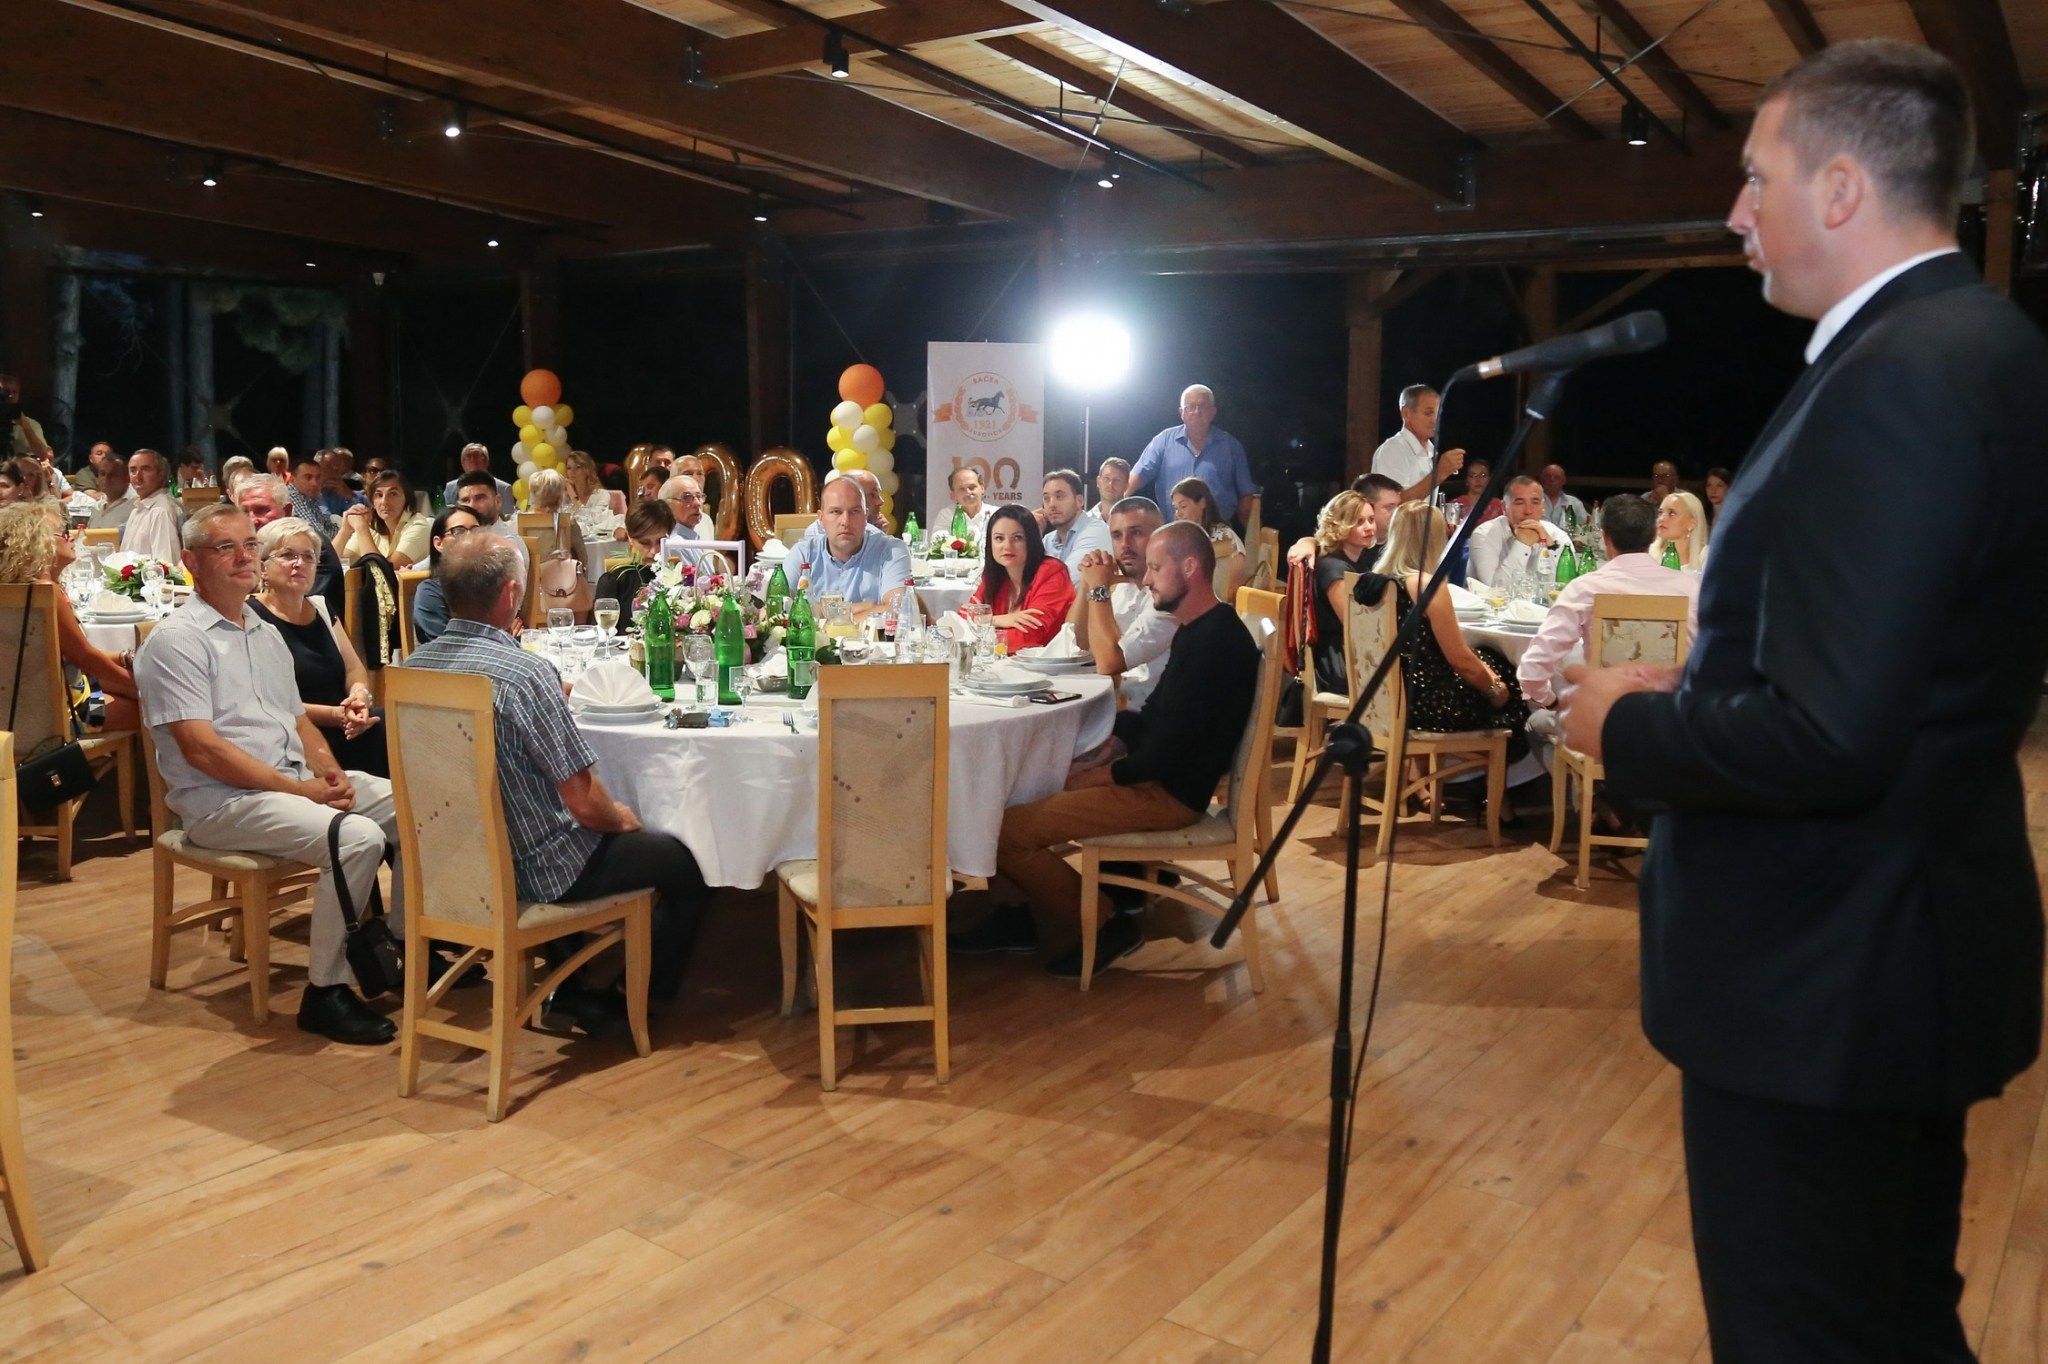 Gradonačelniku Bakiću uručeno priznanje na stogodišnjici Кonjičkog kluba “Bačka”